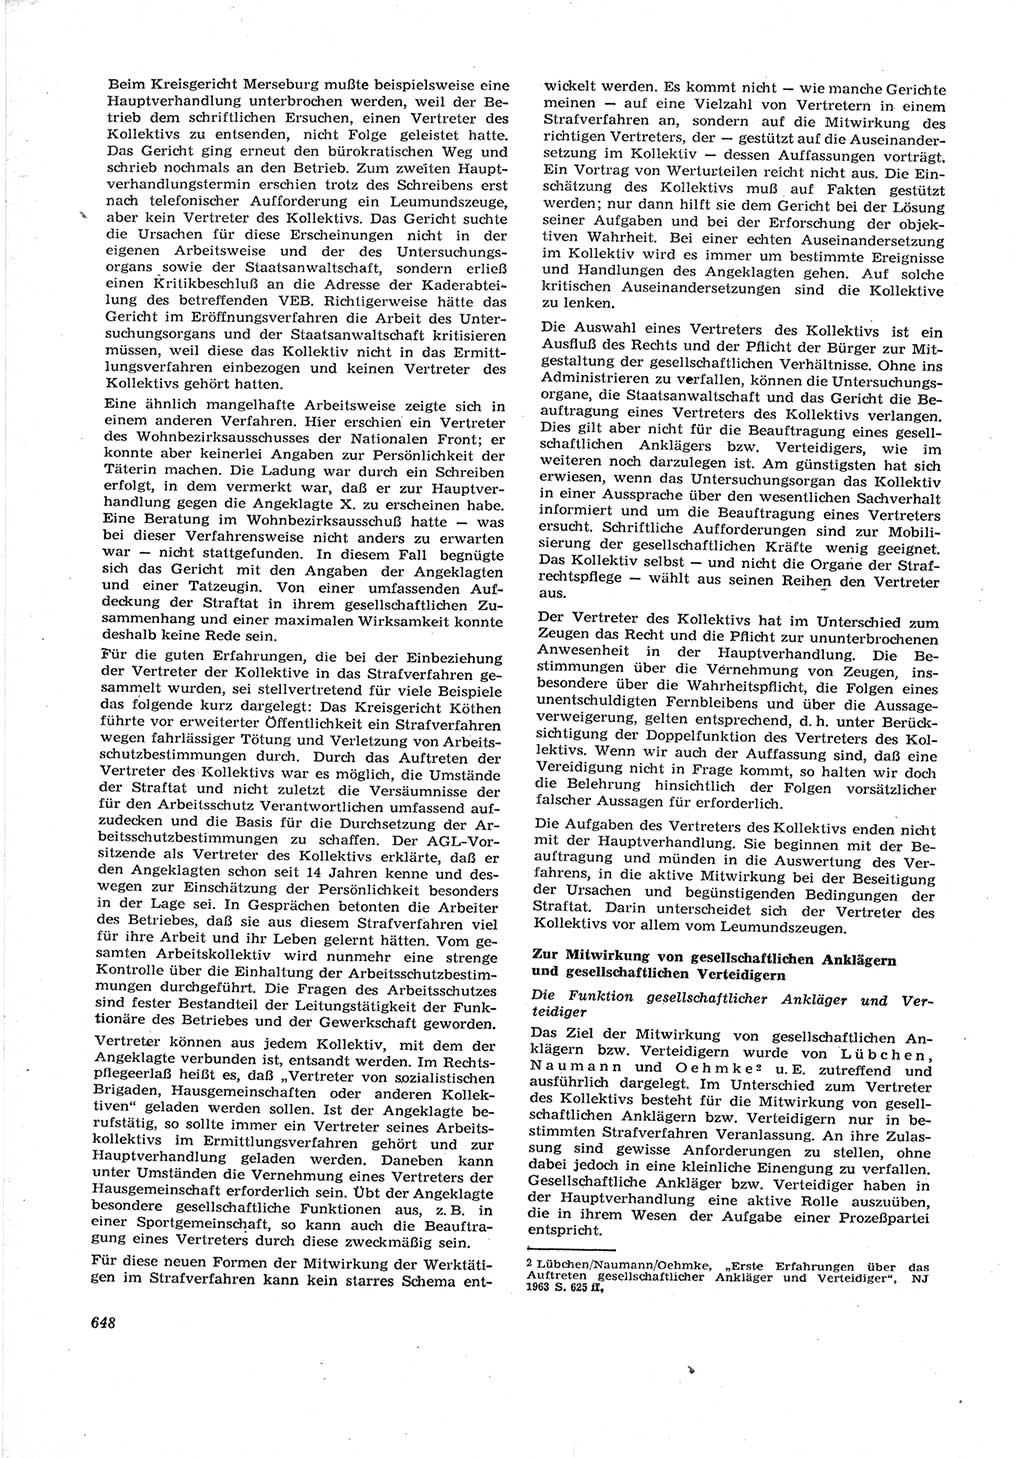 Neue Justiz (NJ), Zeitschrift für Recht und Rechtswissenschaft [Deutsche Demokratische Republik (DDR)], 17. Jahrgang 1963, Seite 648 (NJ DDR 1963, S. 648)